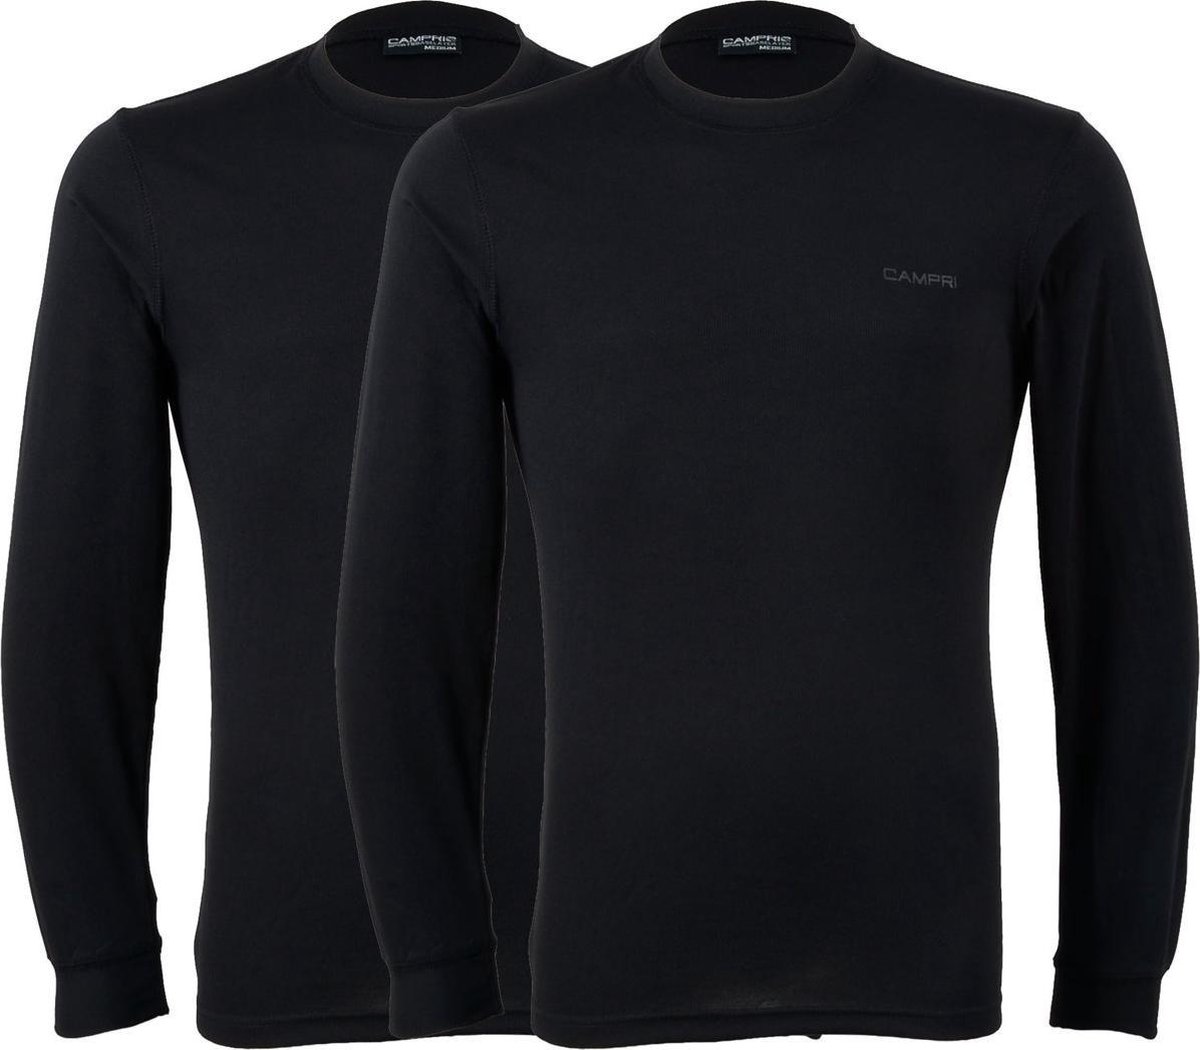 Campri Thermoshirt lange mouw (2-PACK) - Sportshirt - Heren - Maat XL - Zwart